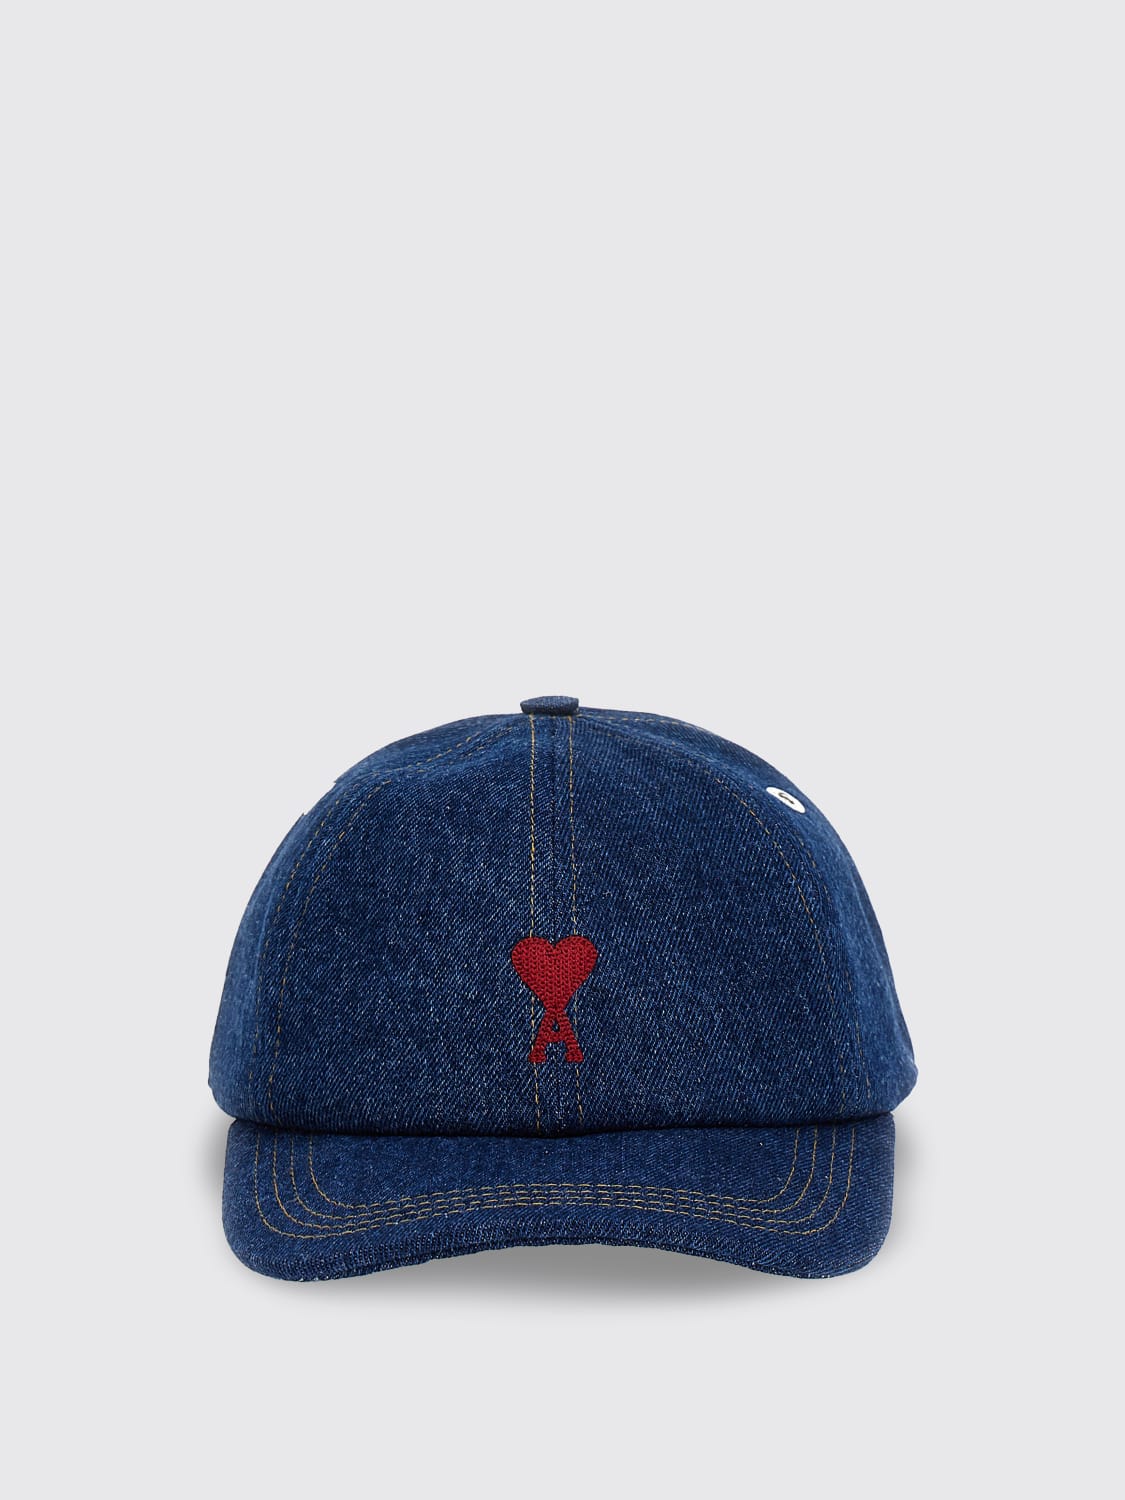 AMI PARIS：帽子男士- 蓝色| Ami Paris 帽子UCP006DE0025 在线就在 